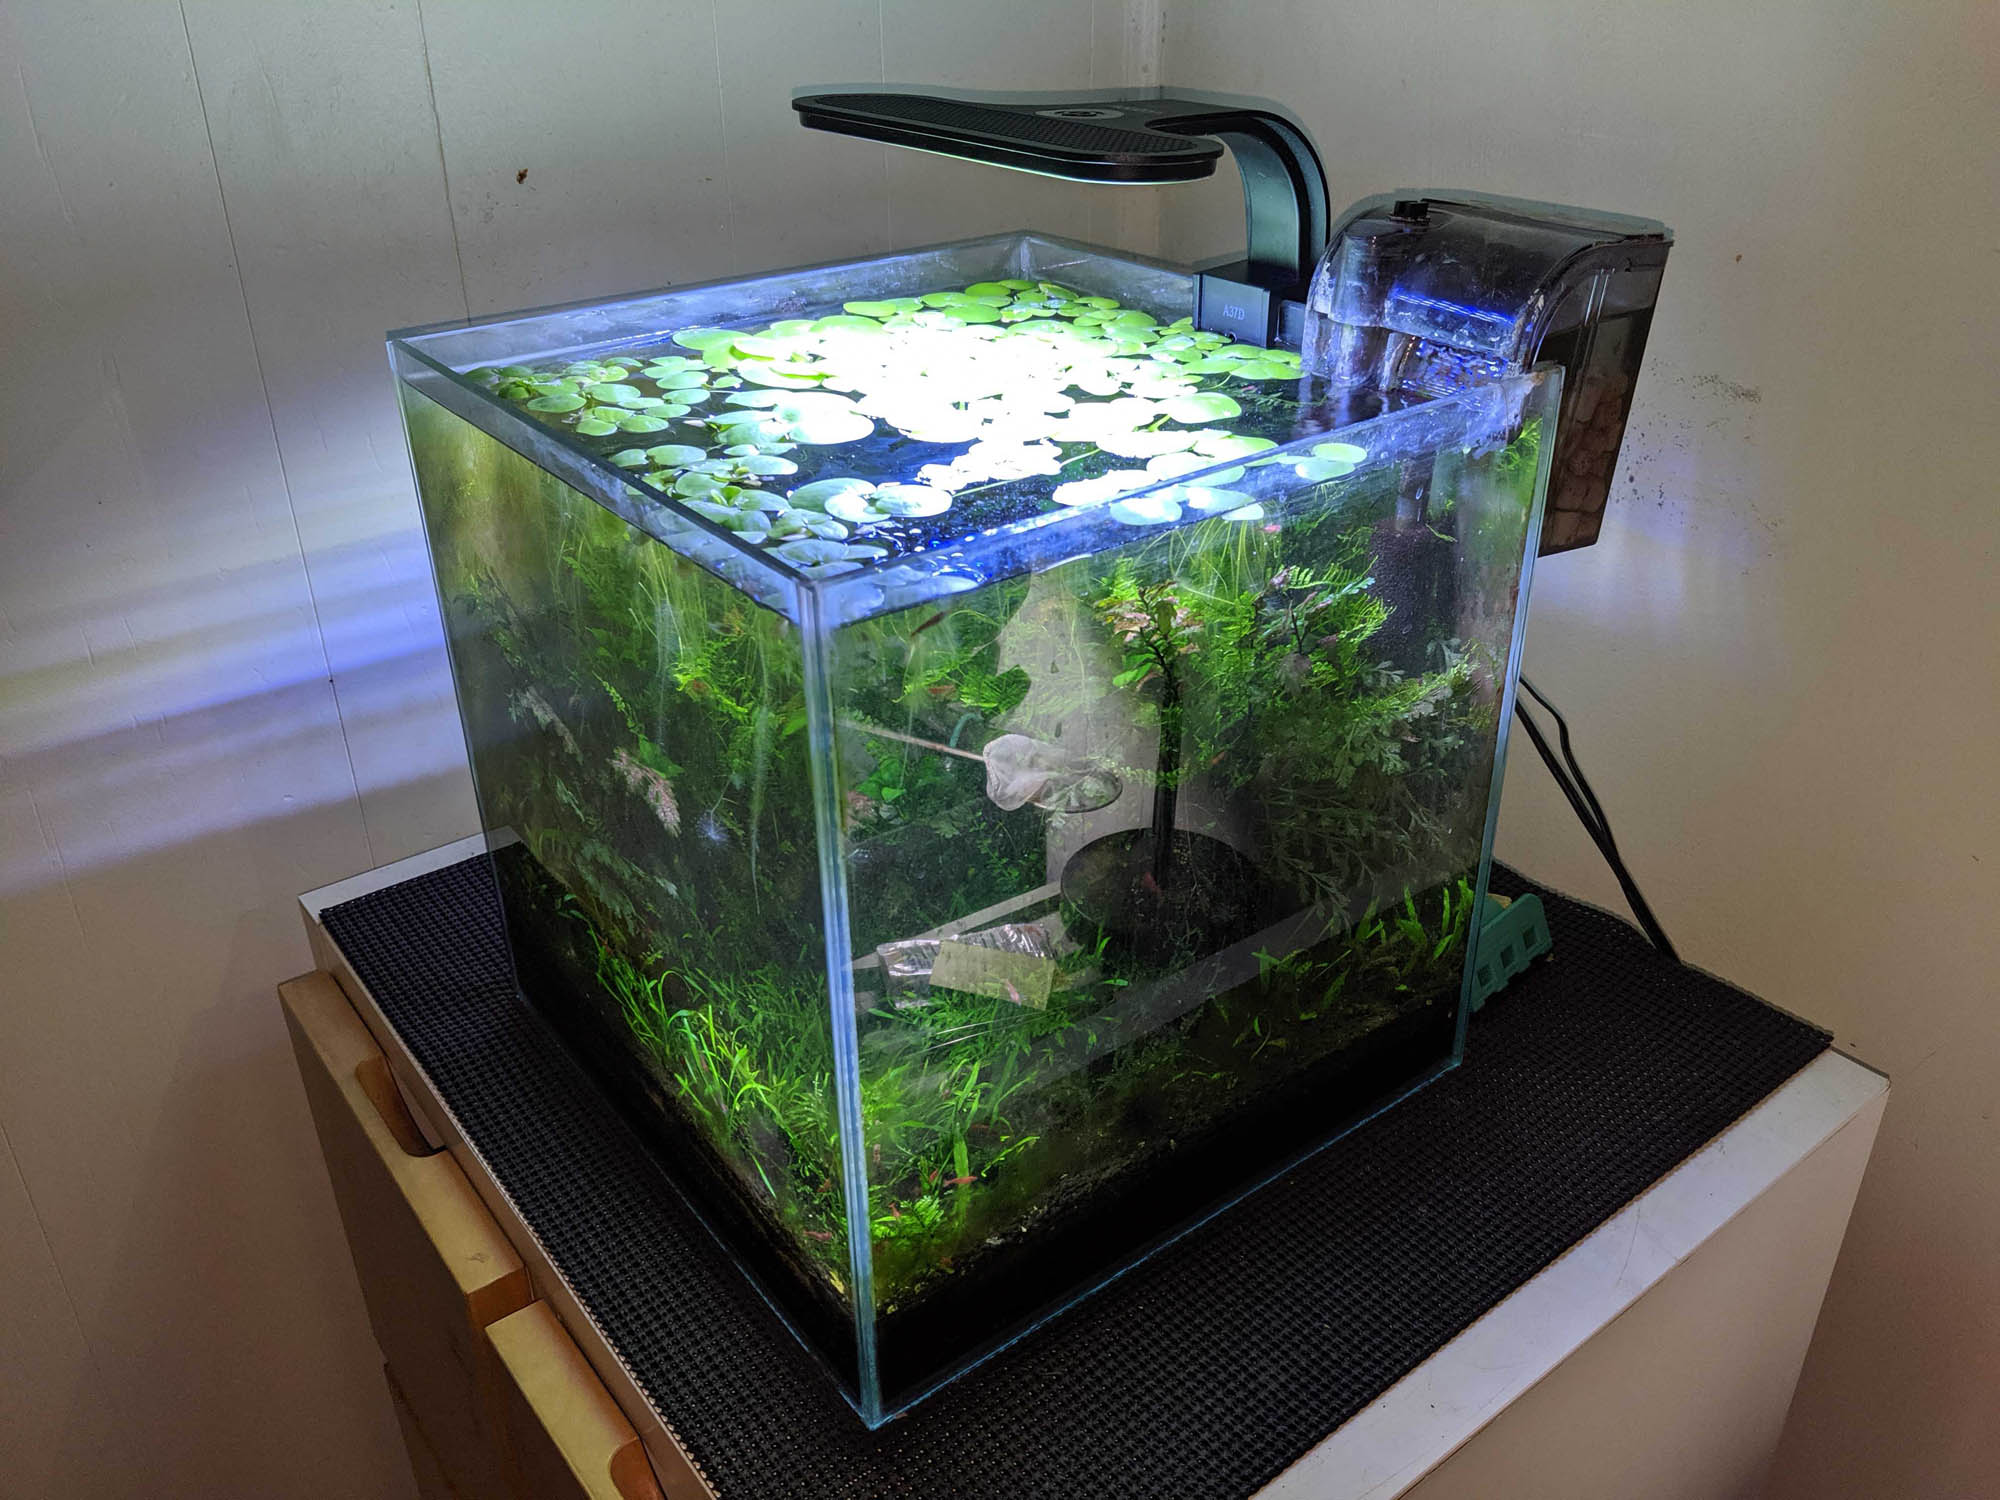 Aqueon Planted Aquarium Clip-On LED